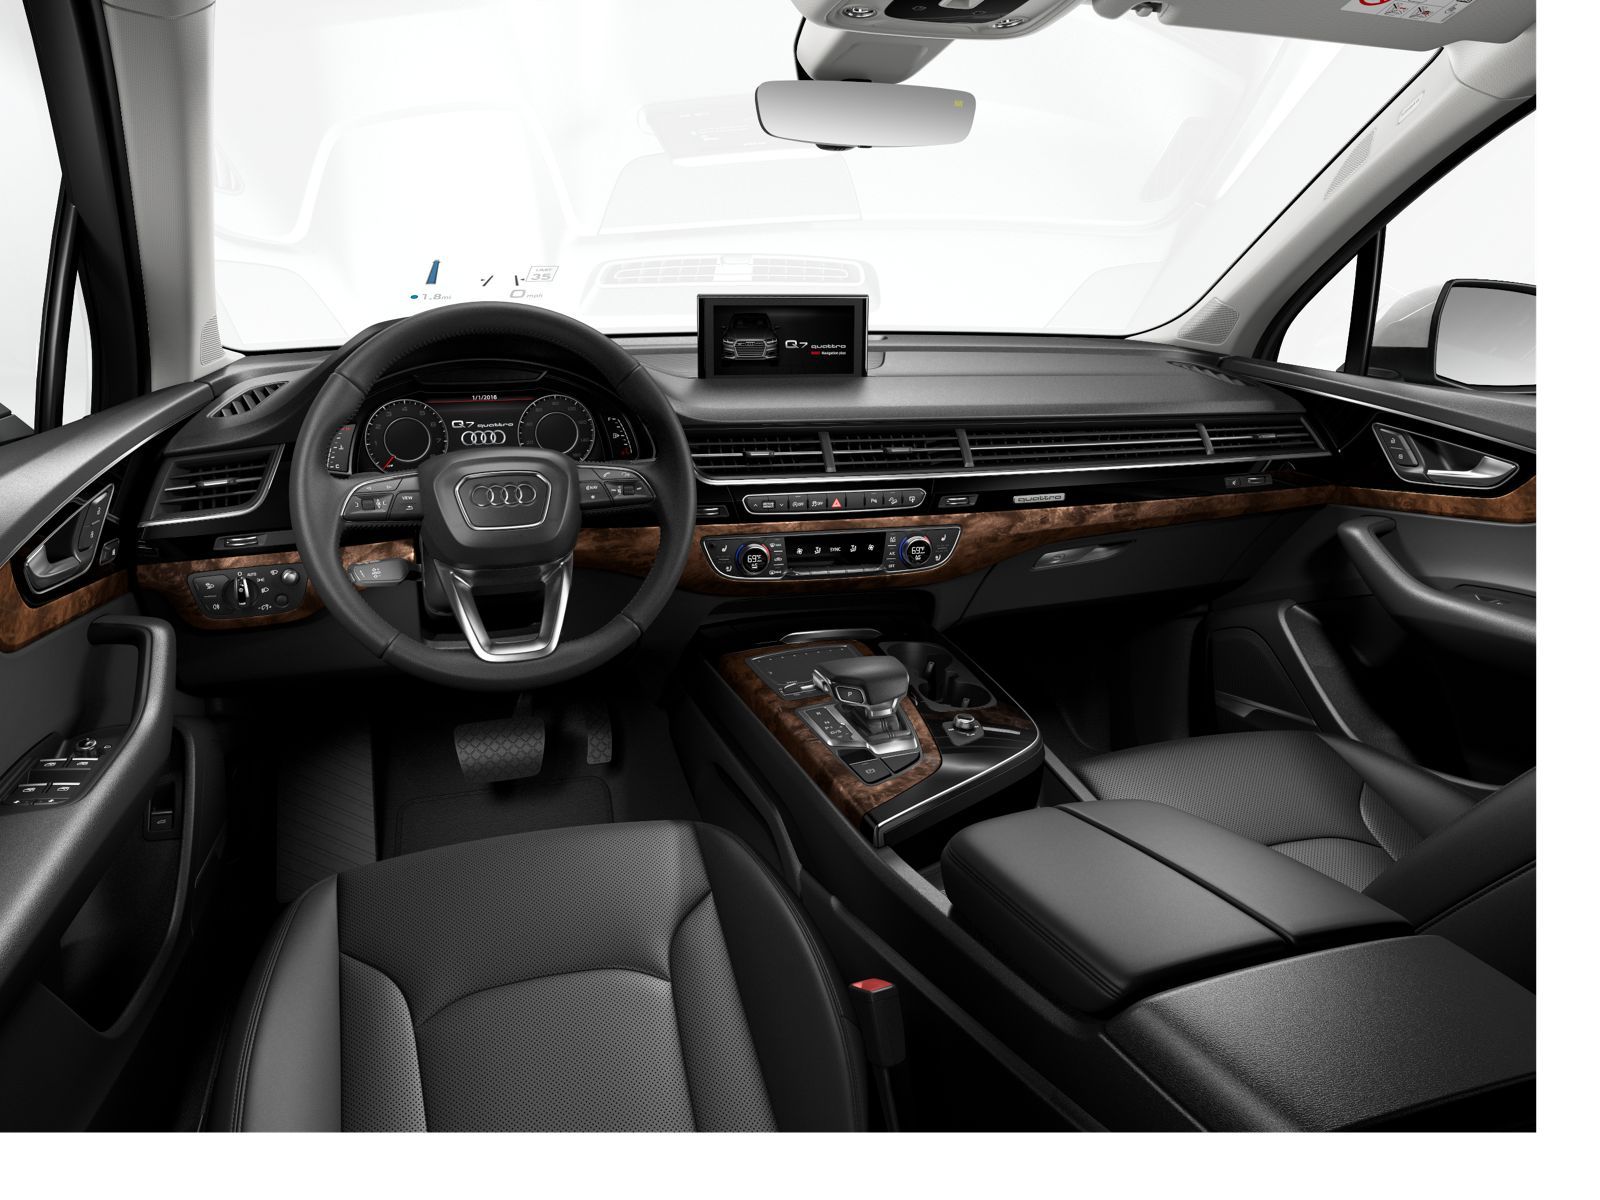 Audi Q7 interior - Cockpit